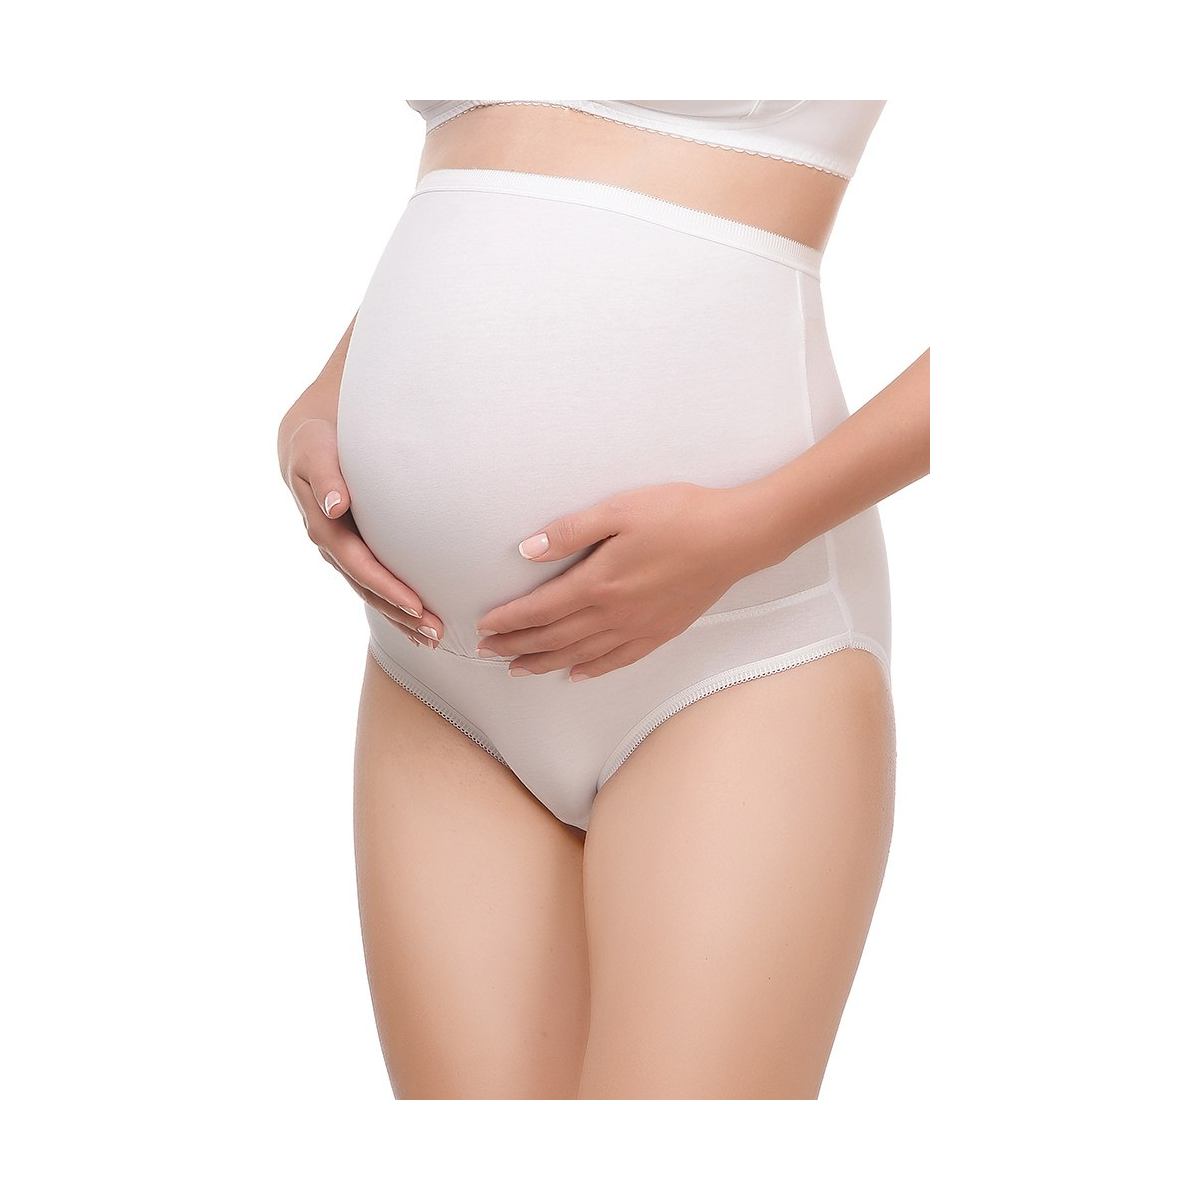 Интимная гигиена при беременности